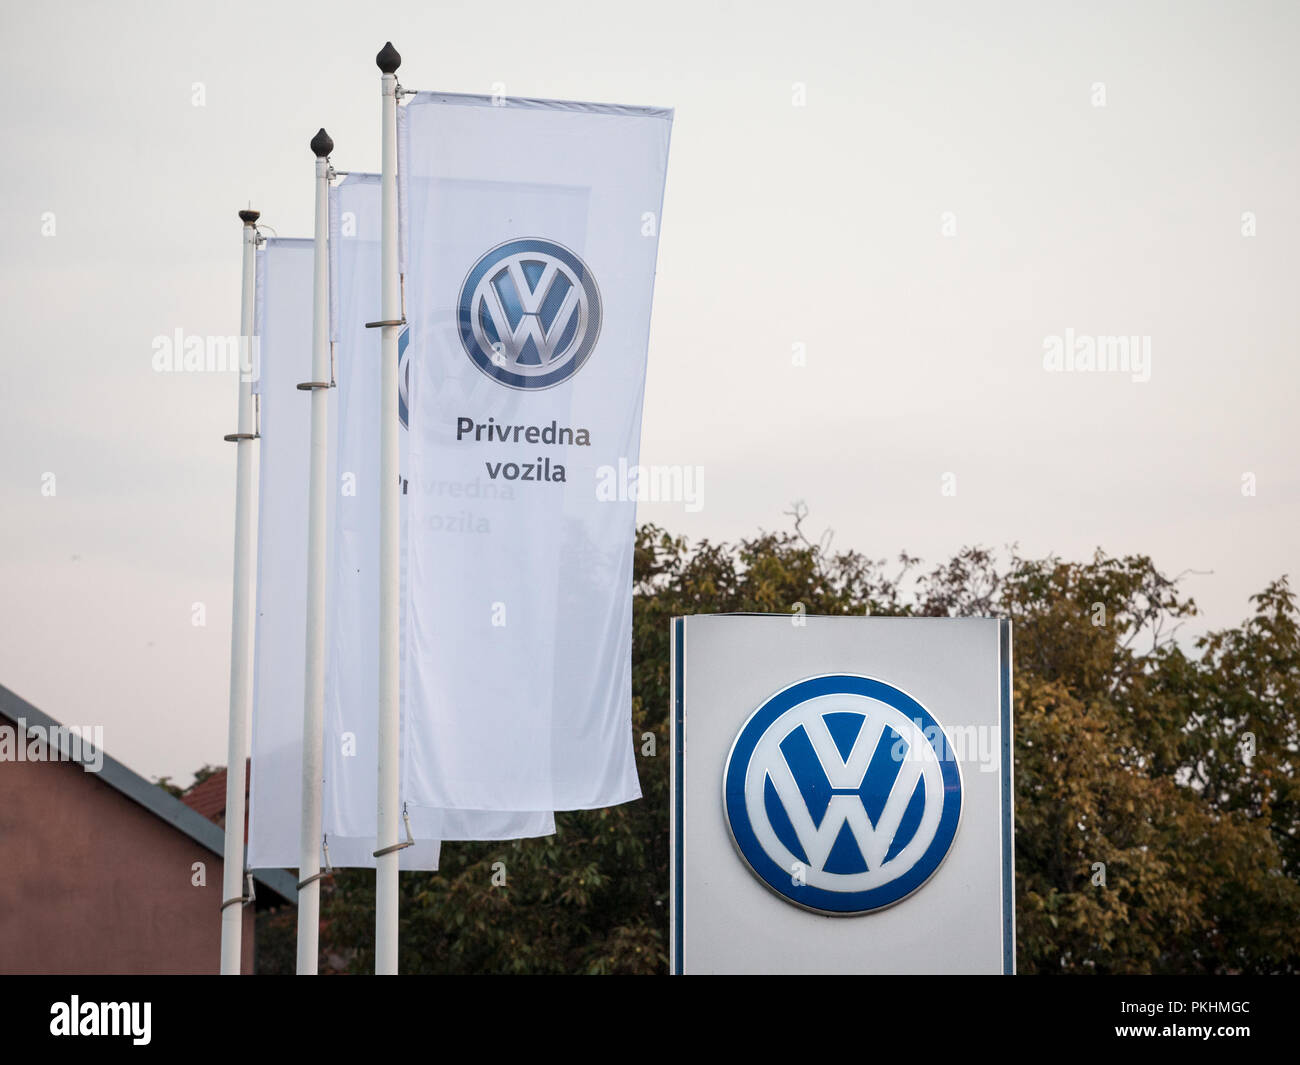 Belgrado, Serbia - 13 settembre 2018: Volkswagen logo sul loro concessionaria principale negozio di Belgrado. Volkswagen è una vettura tedesca e costruttore automobilistico Foto Stock